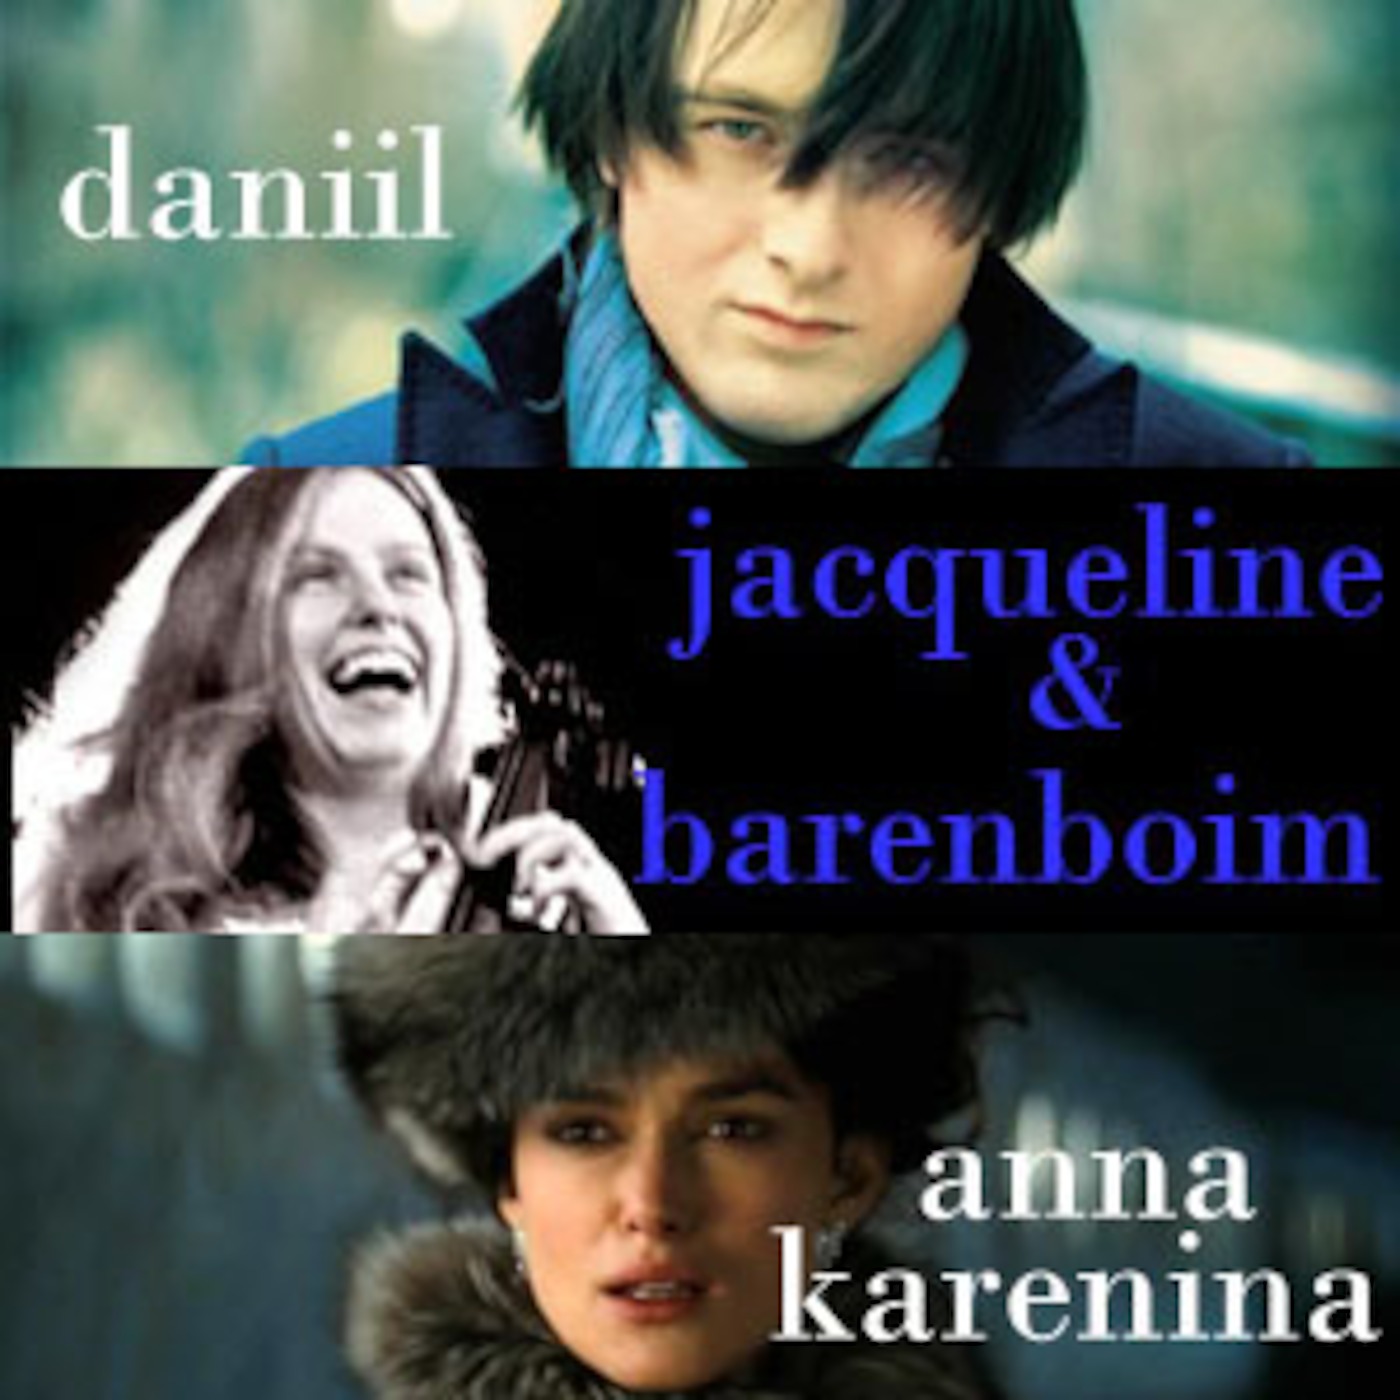 Set 57 - Daniil Trifonov. Jacqueline du Pré. Daniel Barenboim. Anna Karenina.